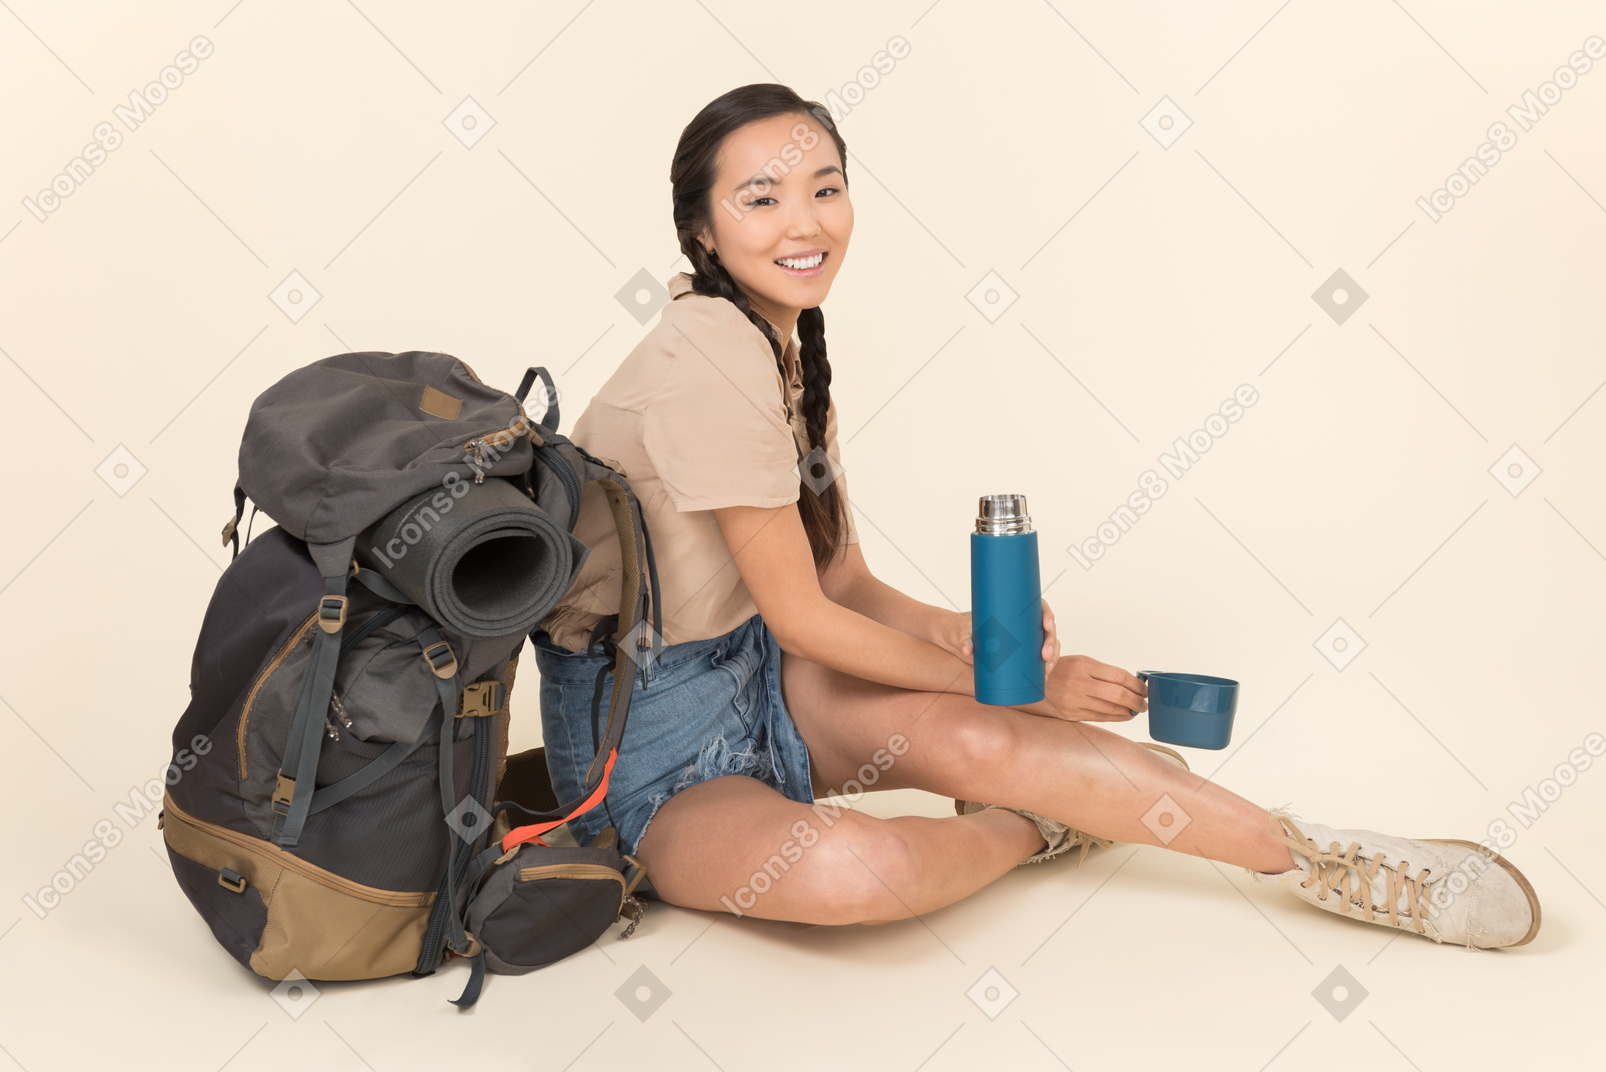 Junge asiatische frau, die nahe rucksack sitzt und thermosflasche behandelt